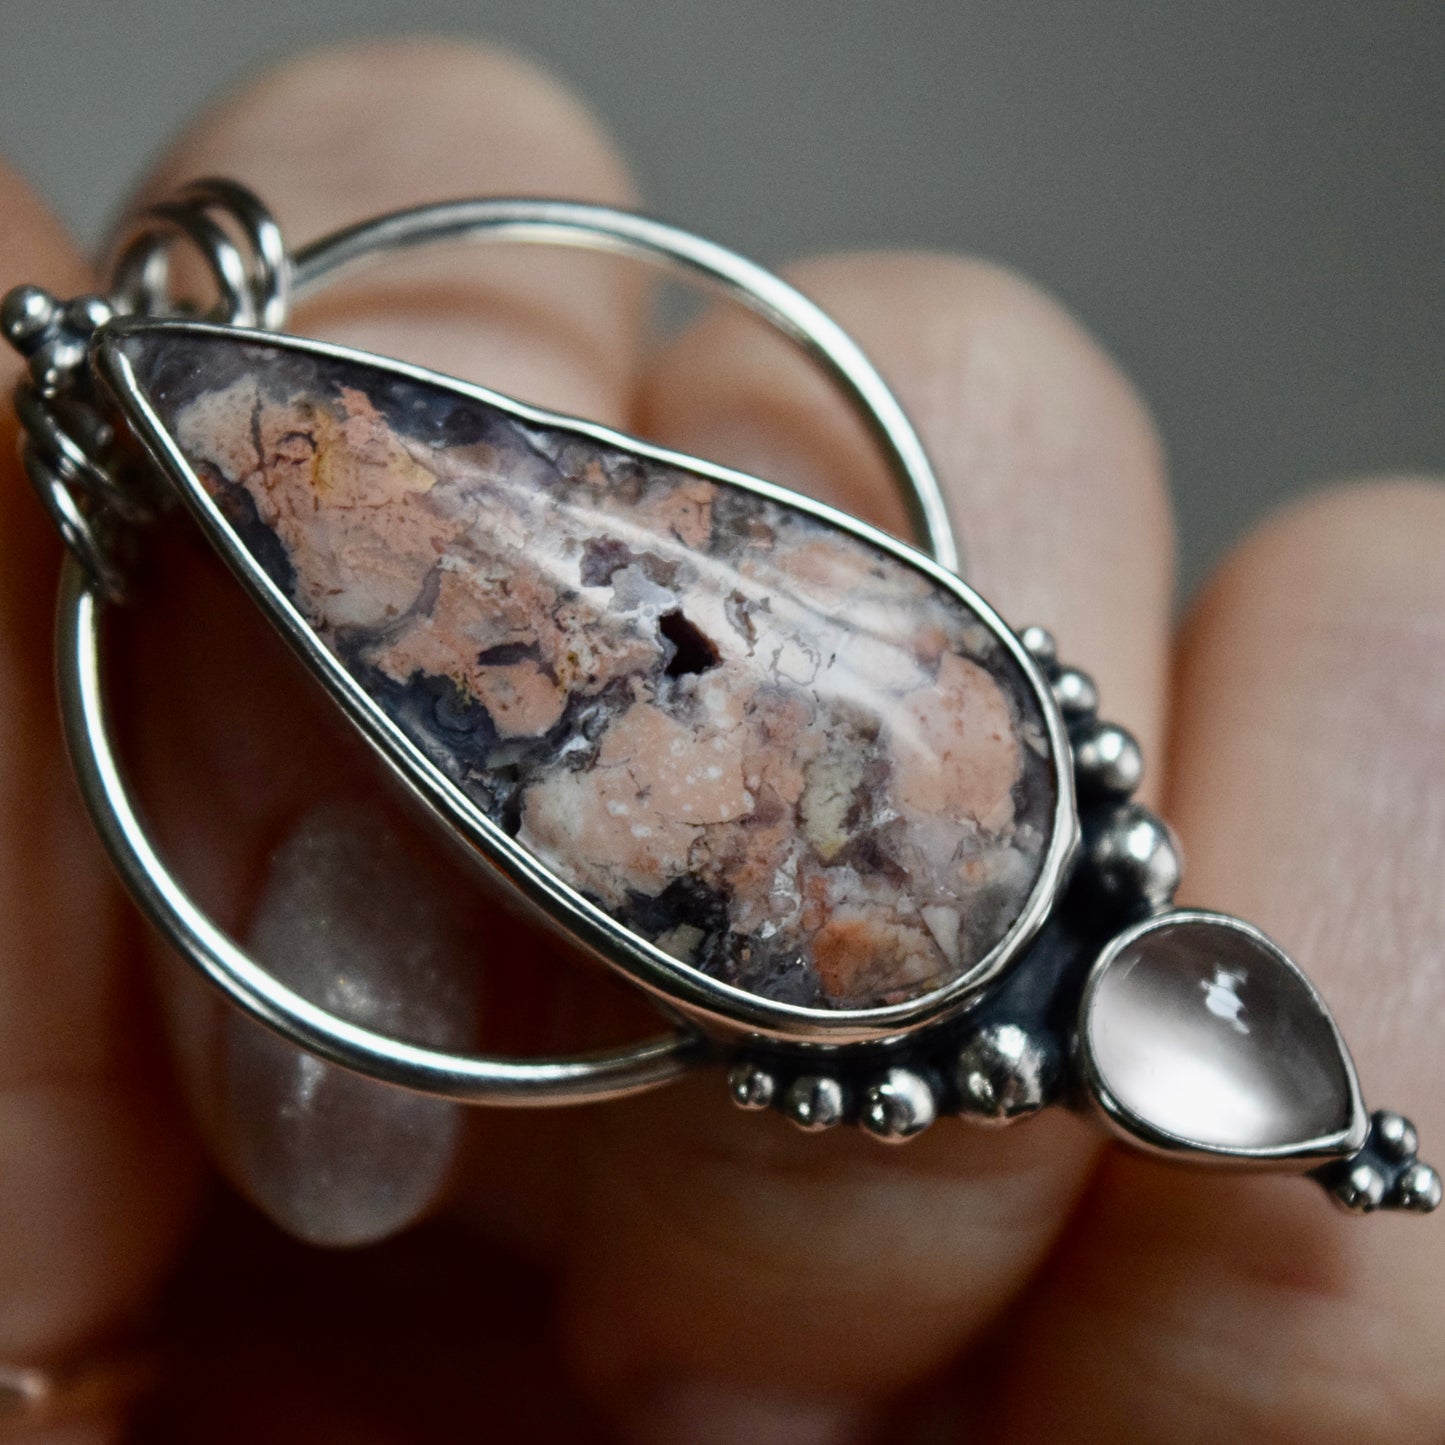 Pendulum Pendant with Tiffany Stone and Rose Quartz